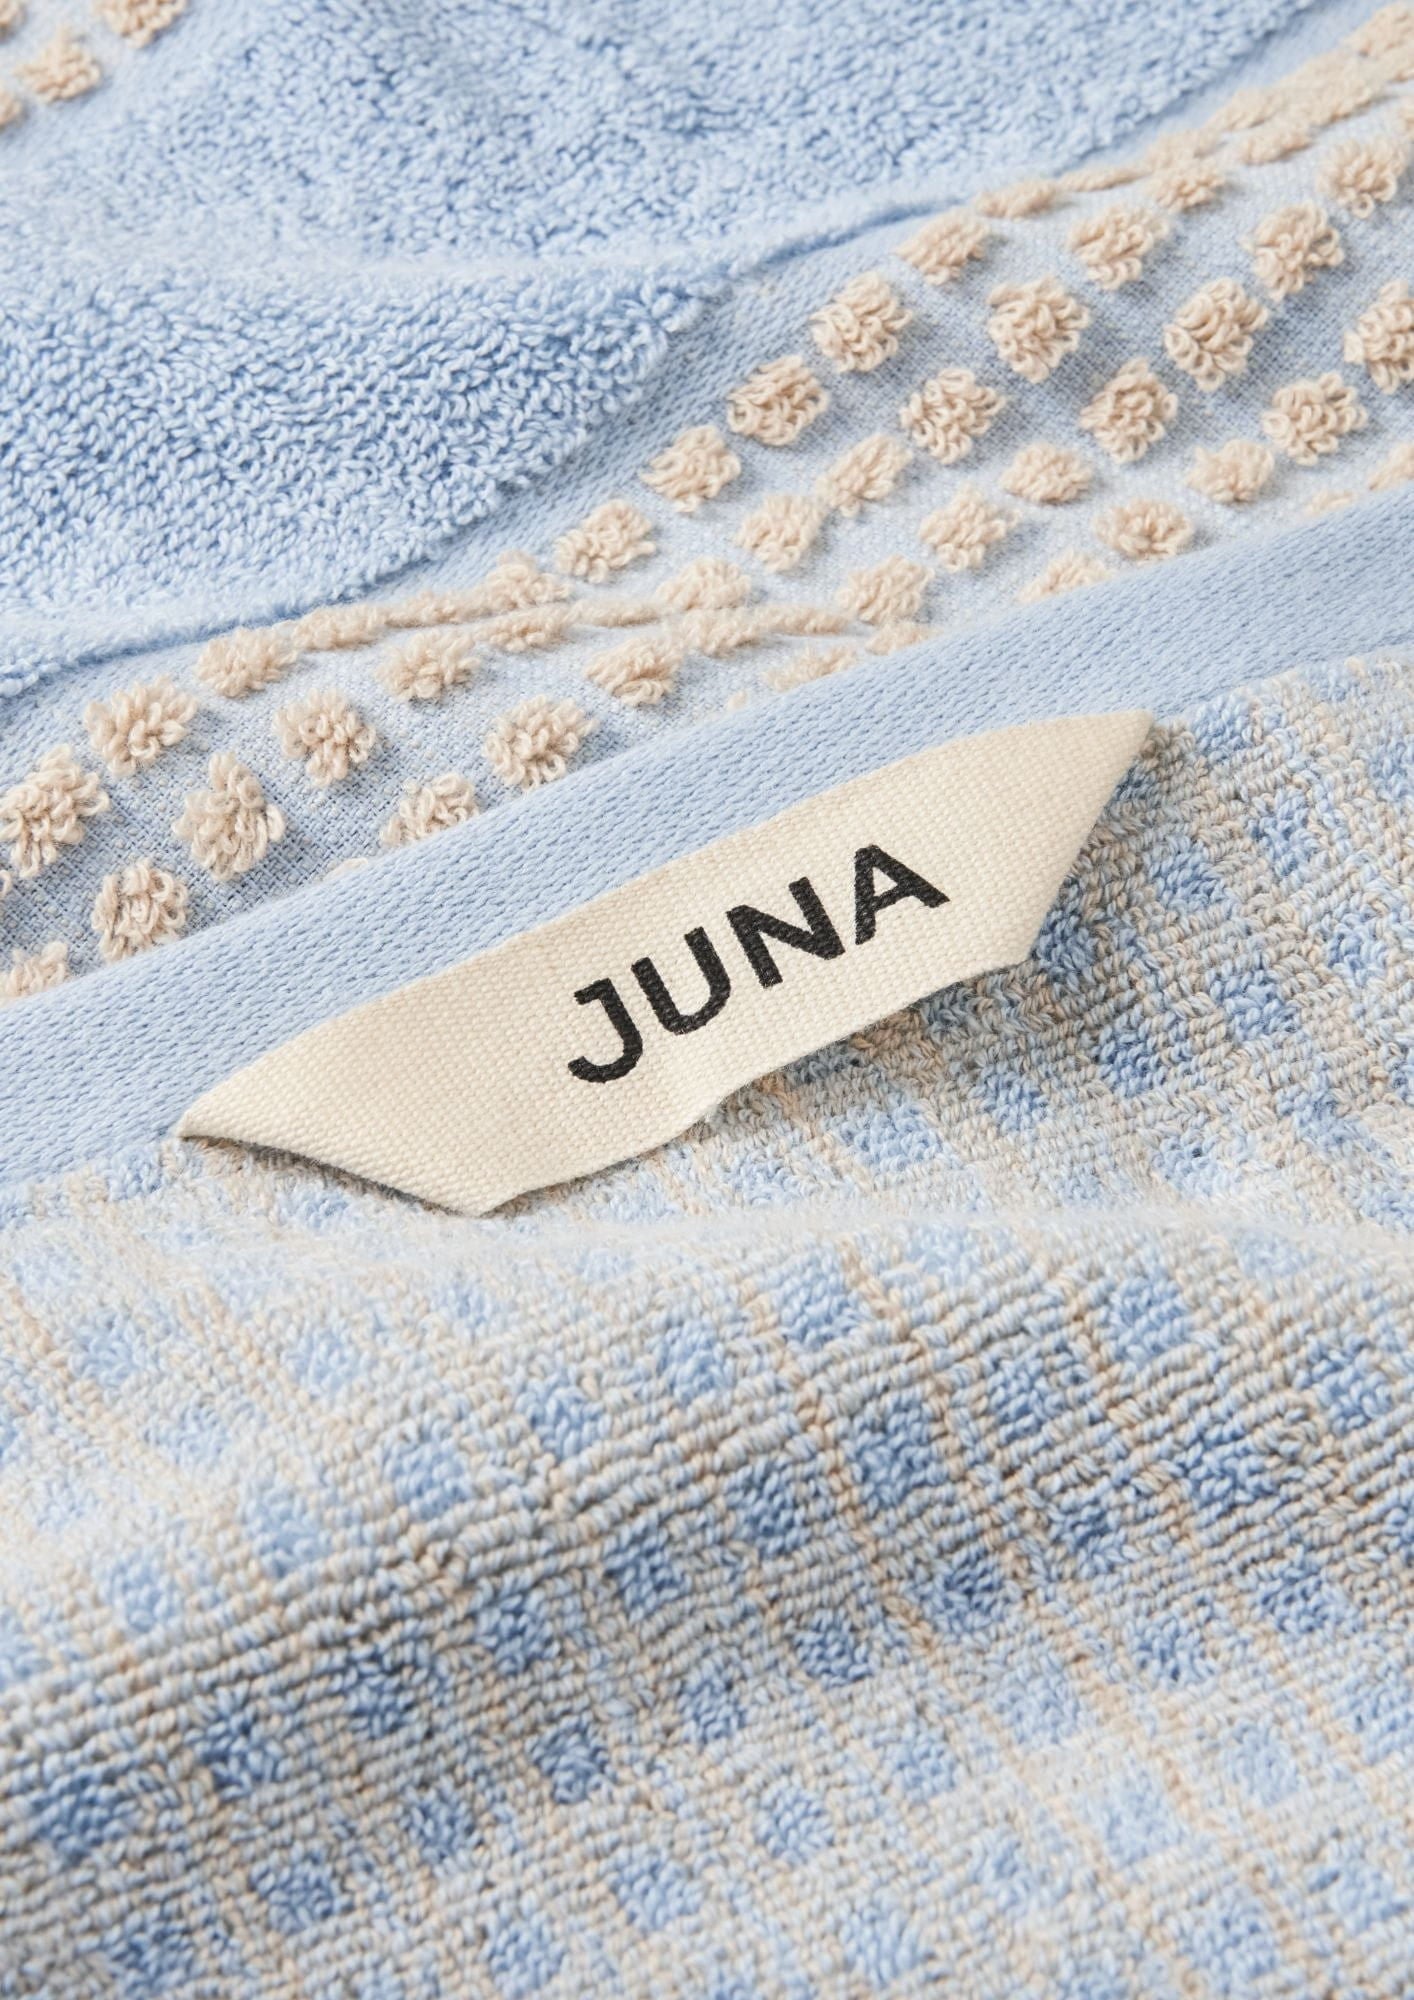 Juna Check Towel 50x100 Cm, Light Blue/Sand